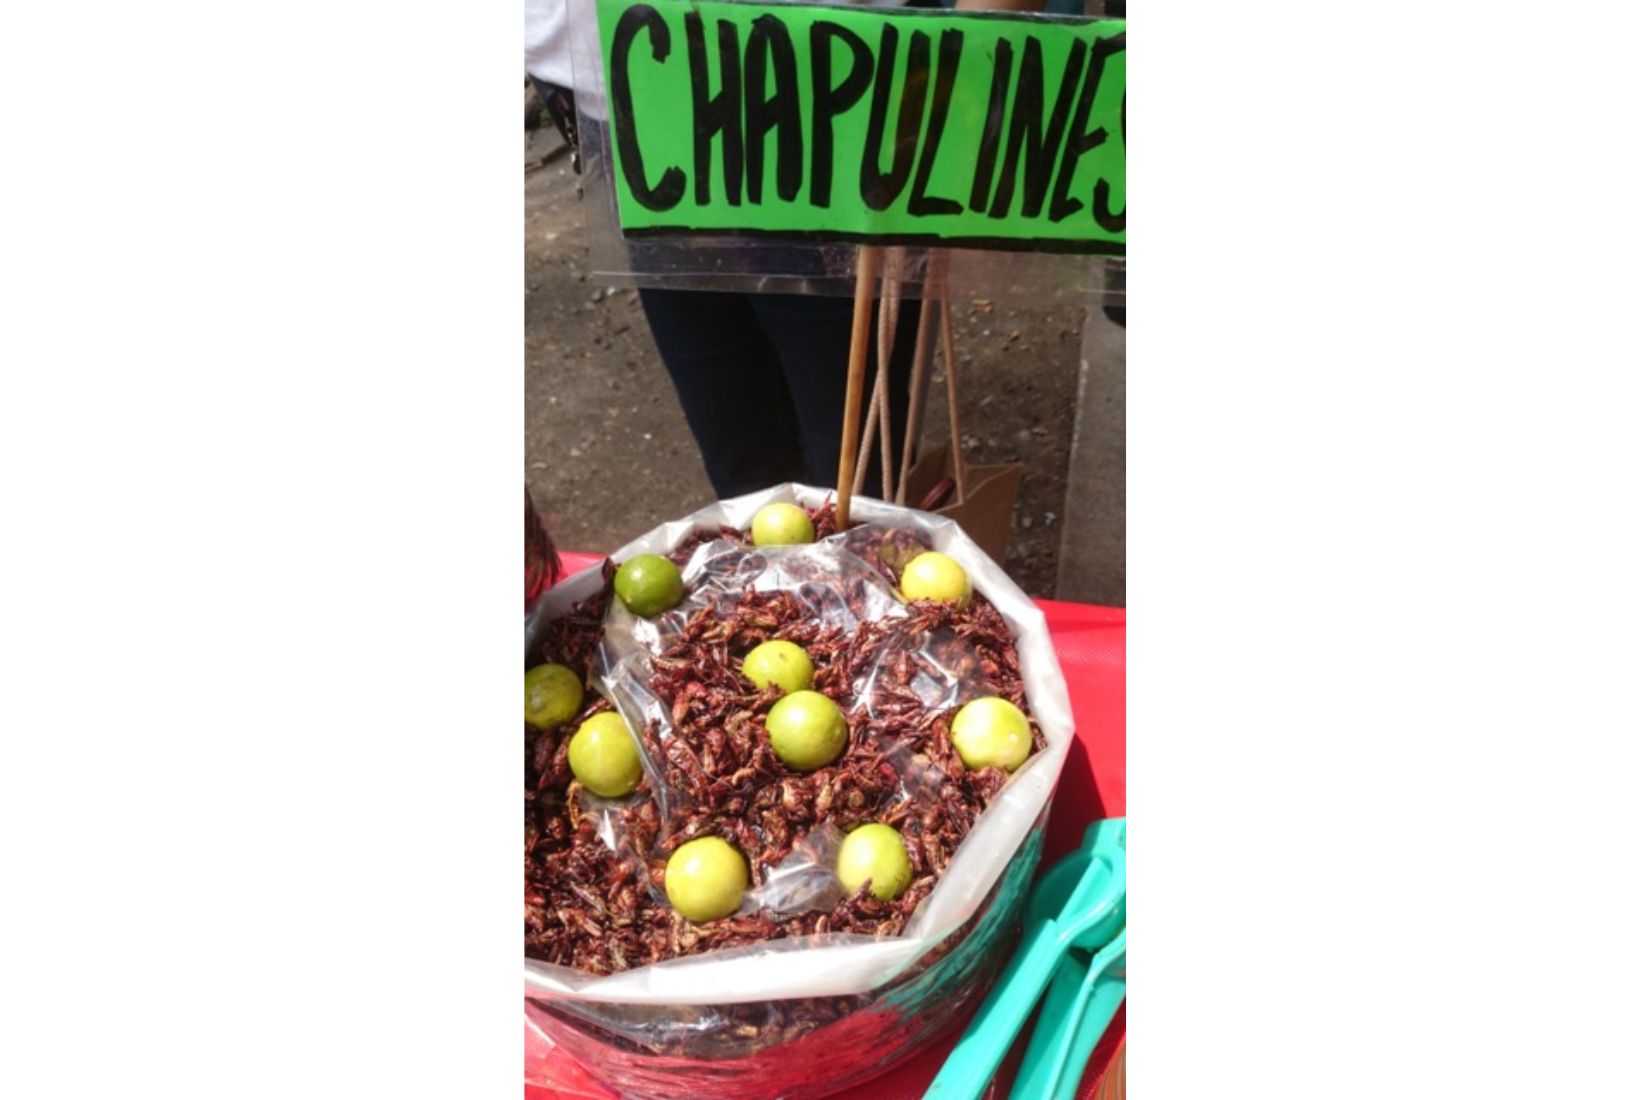 Tacos de chapulines. Son característicos de Oaxaca, aunque también los comen en otros estados cercanos